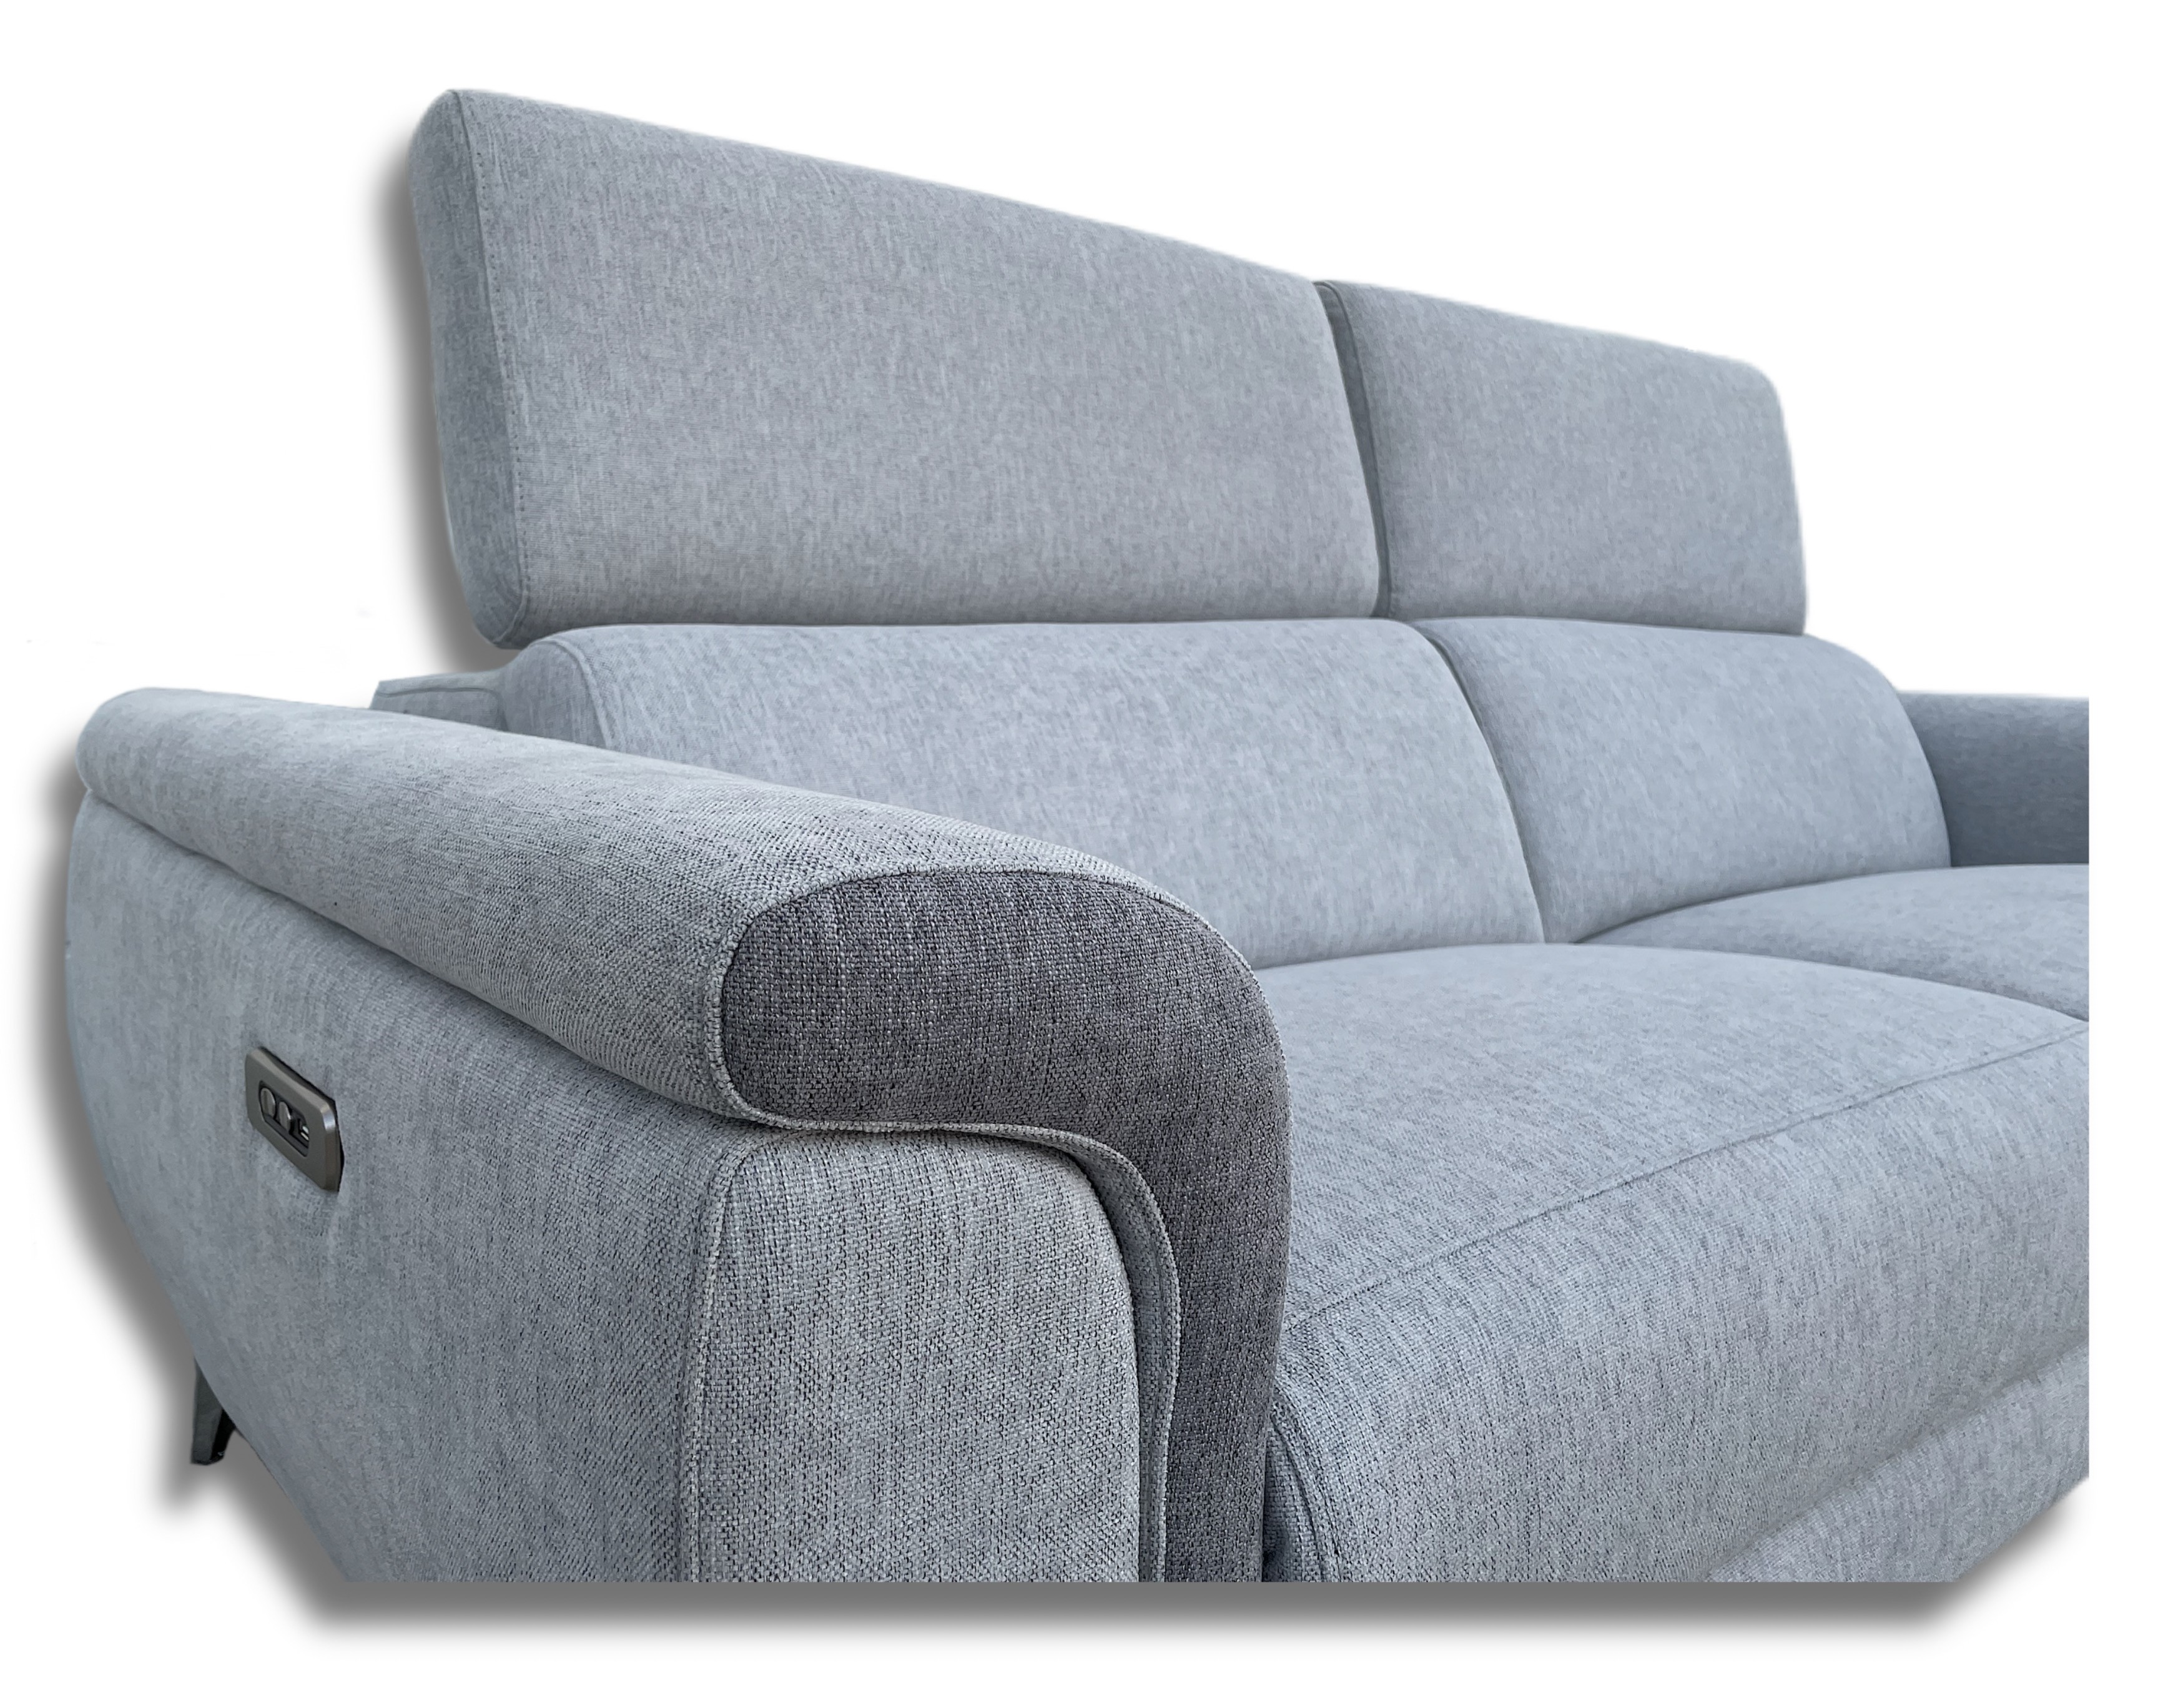 Modelo Charlotte :: Sofá + Chaiselongue :: Fábrica y venta de sofás y  sillones relax de calidad.